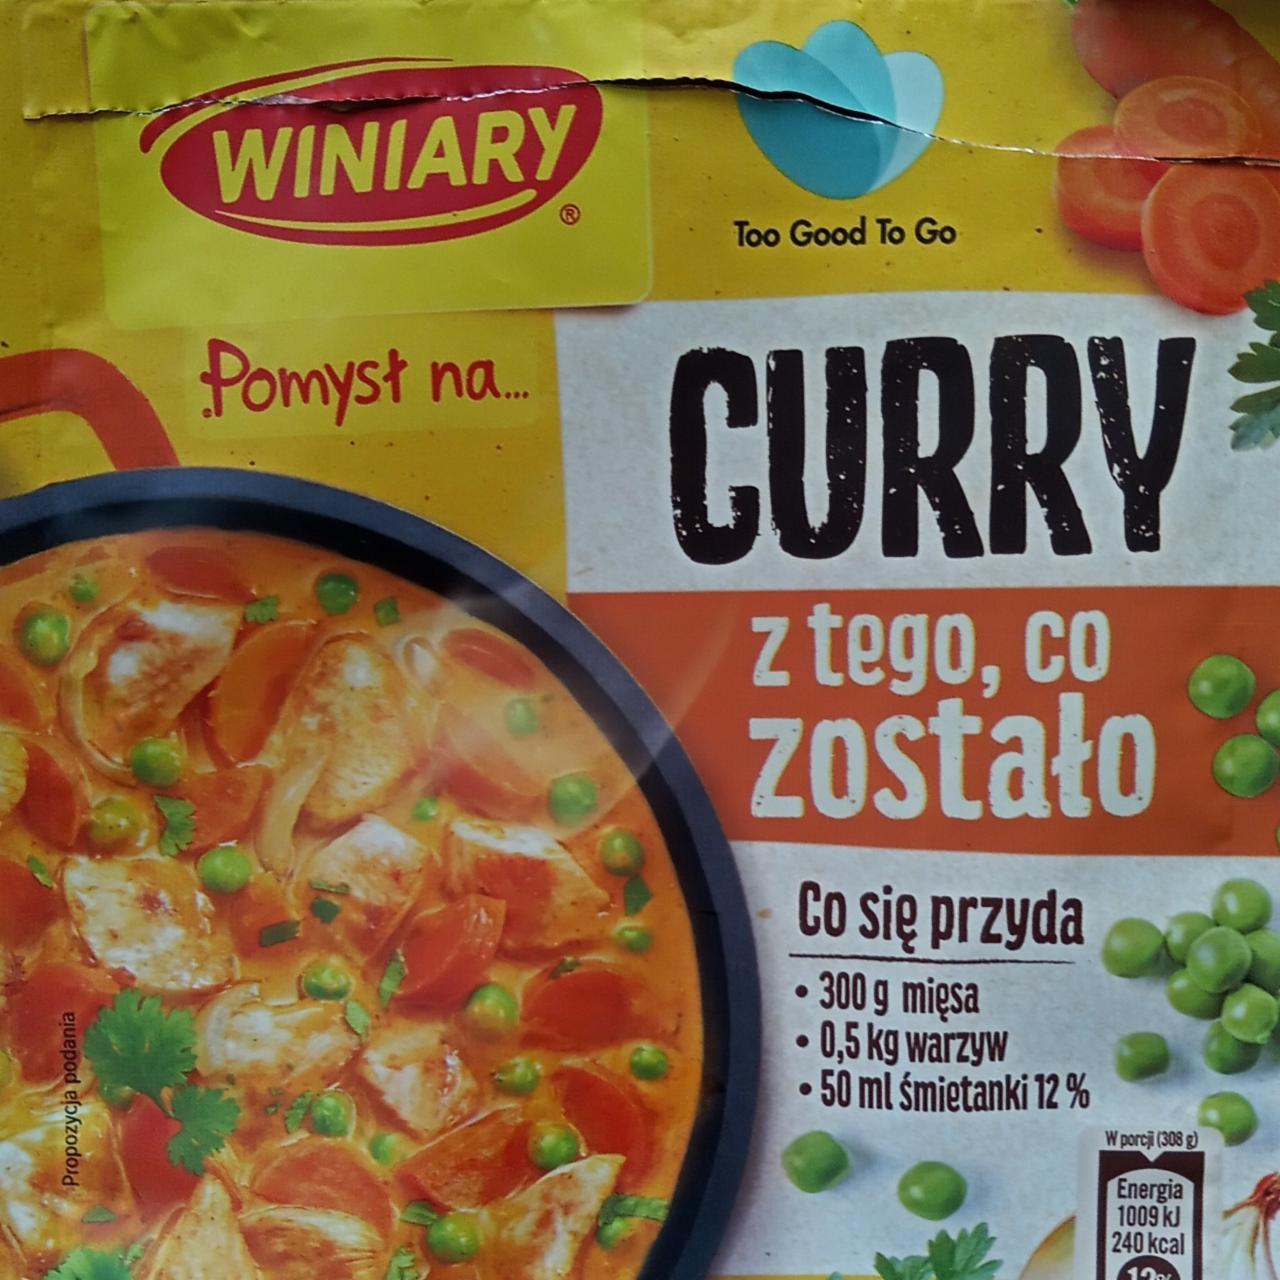 Zdjęcia - Winiary Pomysł na... Curry z tego co zostało 30 g